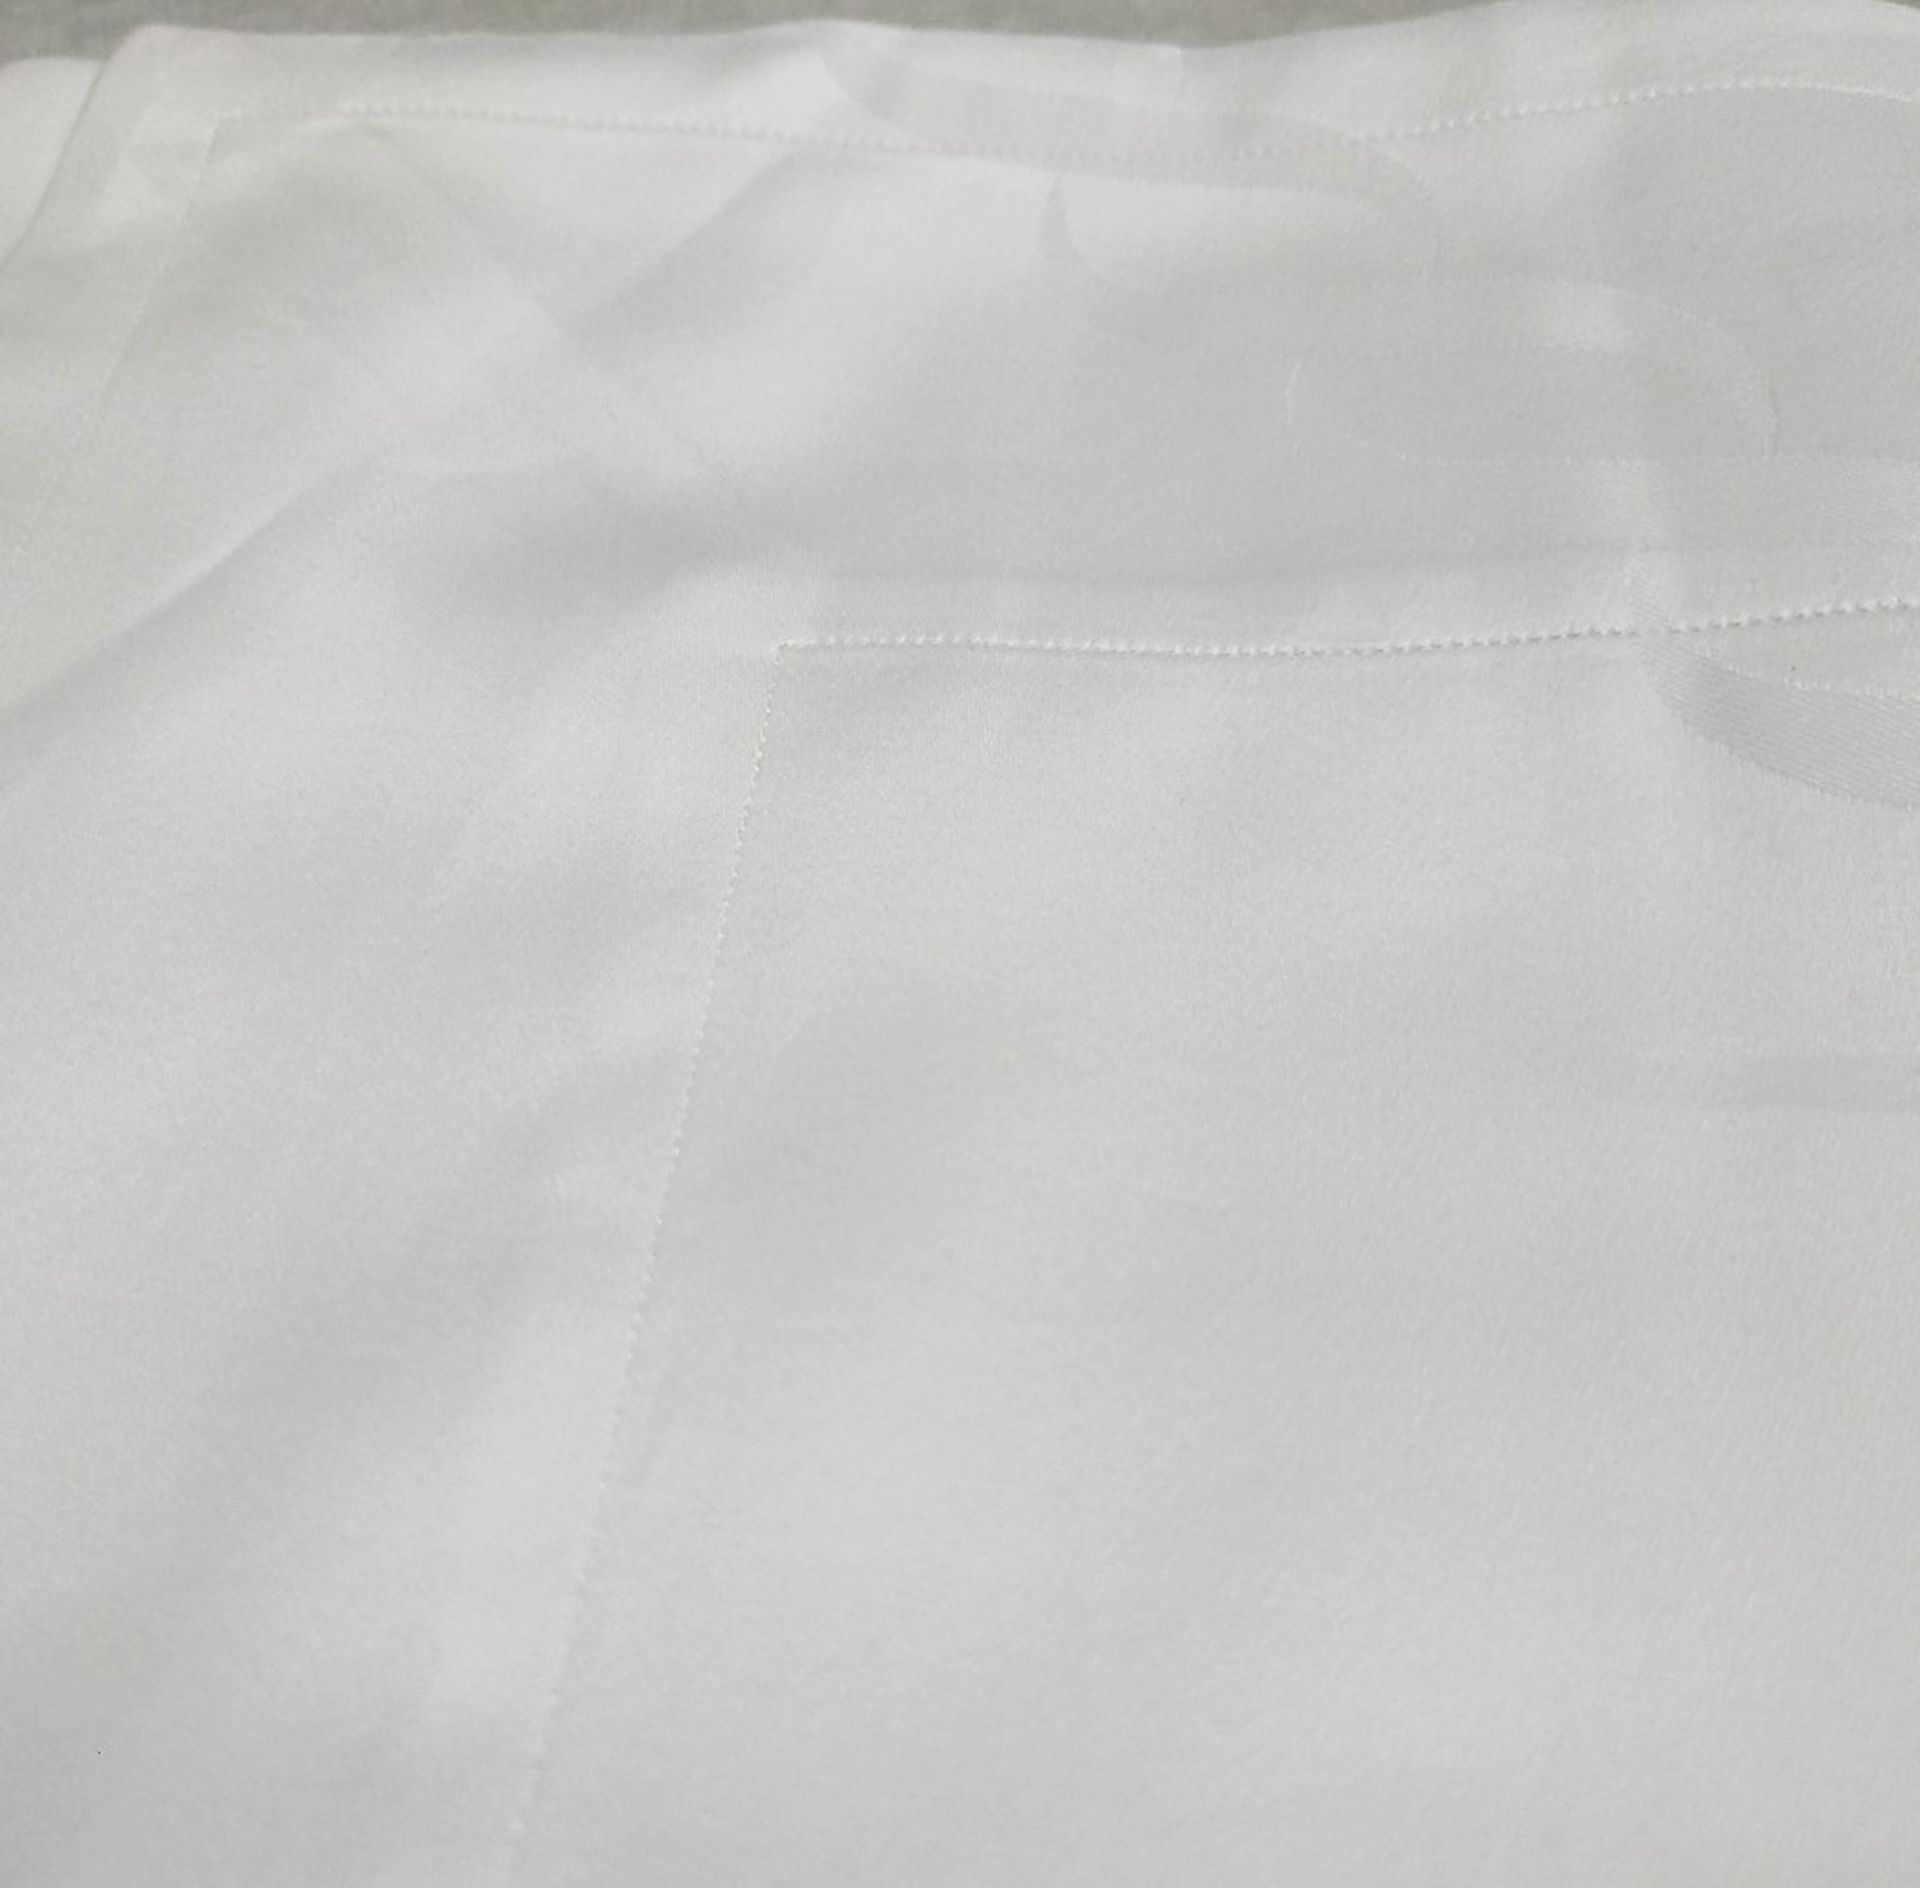 1 x PRATESI Treccia Italian Pillow Shams Made With Egyptian Cotton 65x65cm - Image 3 of 5